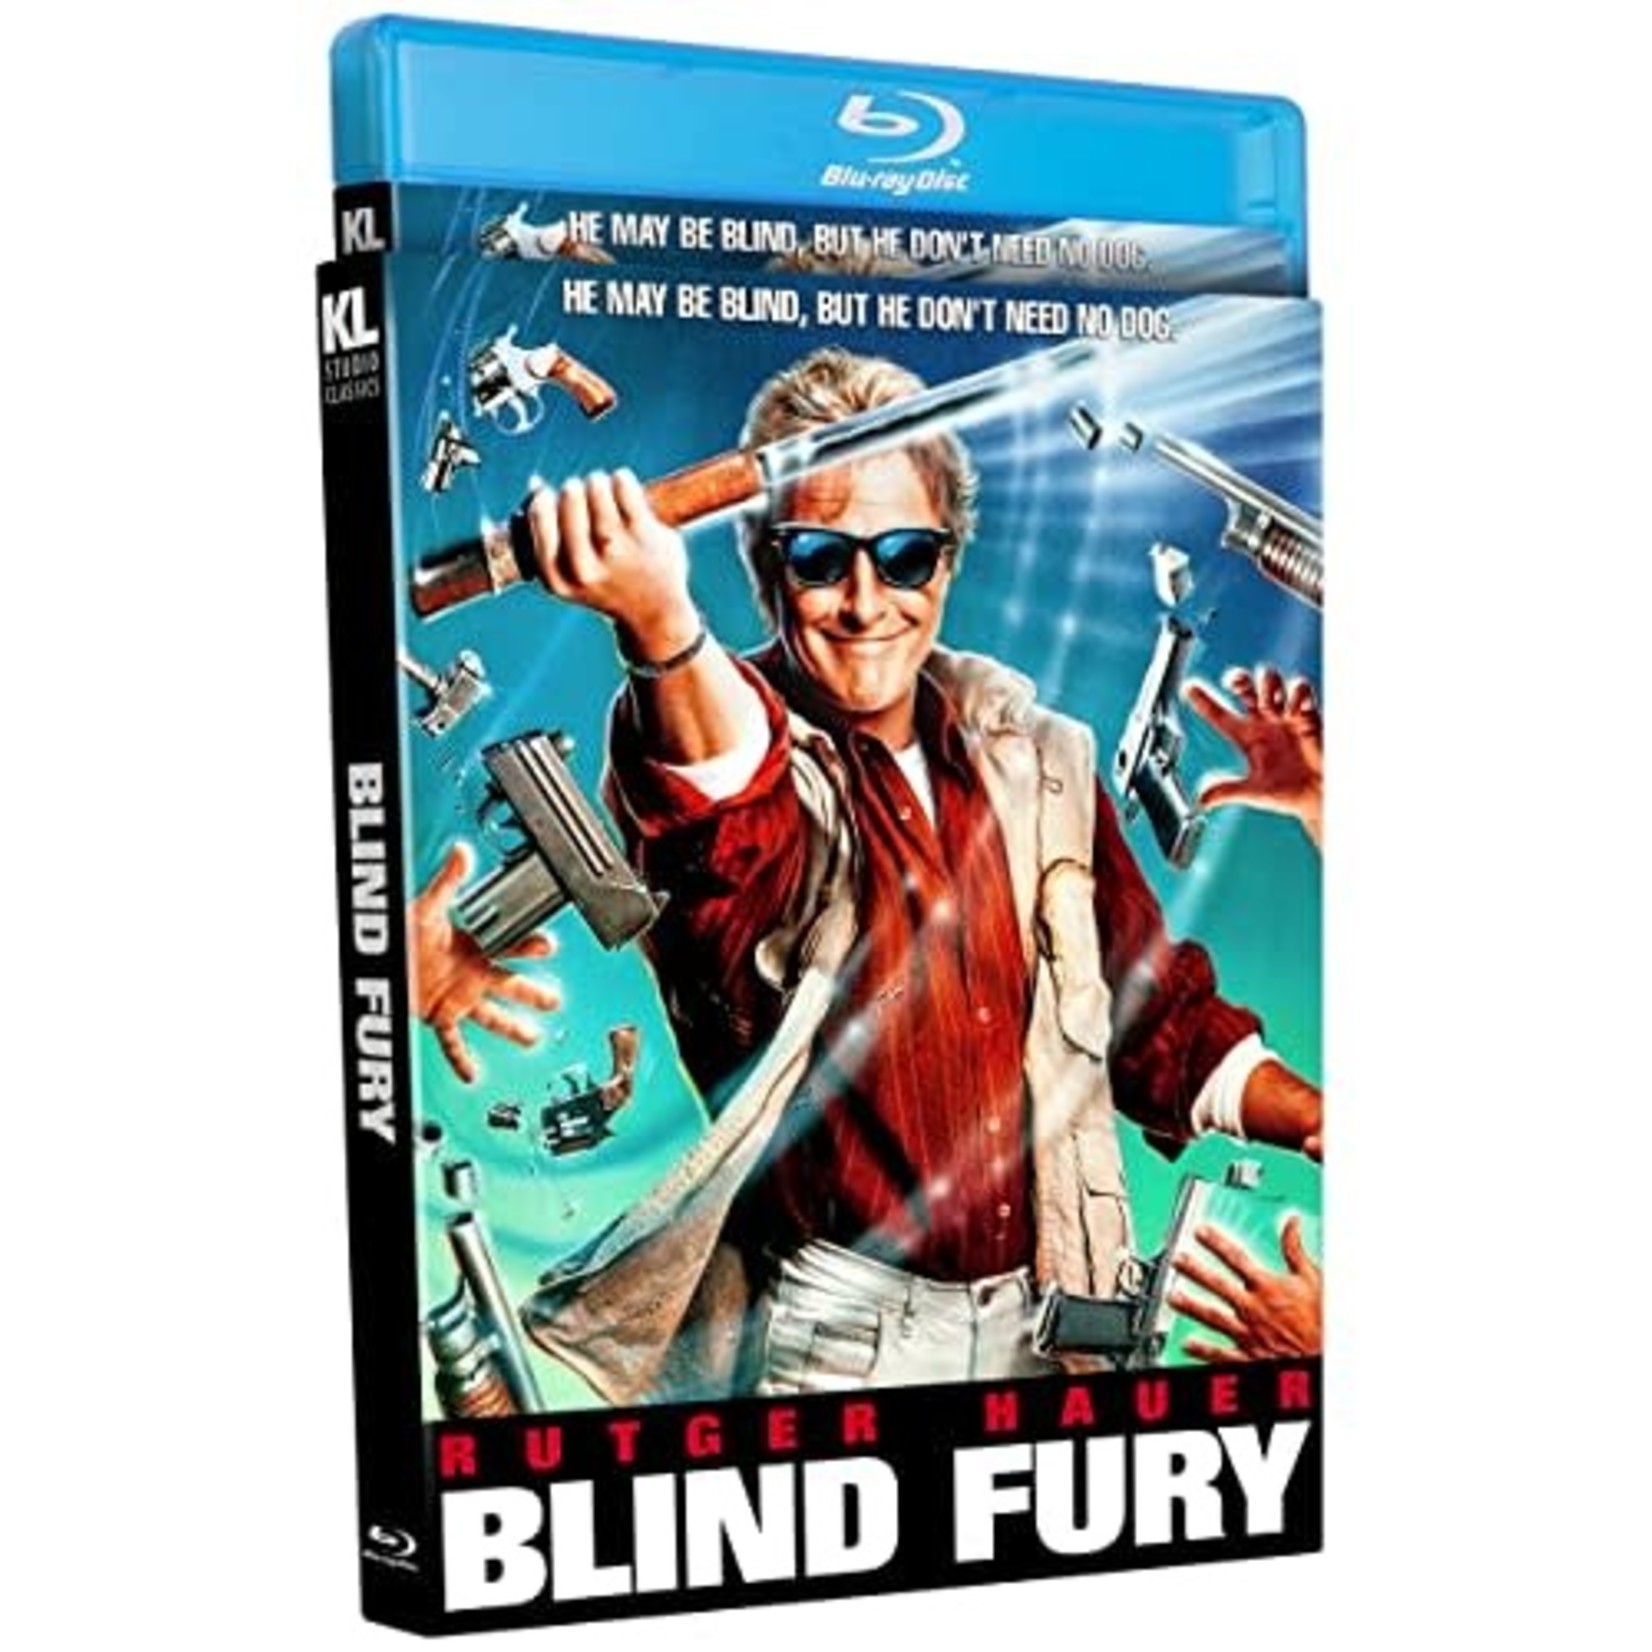 Blind Fury (1989) [BRD]